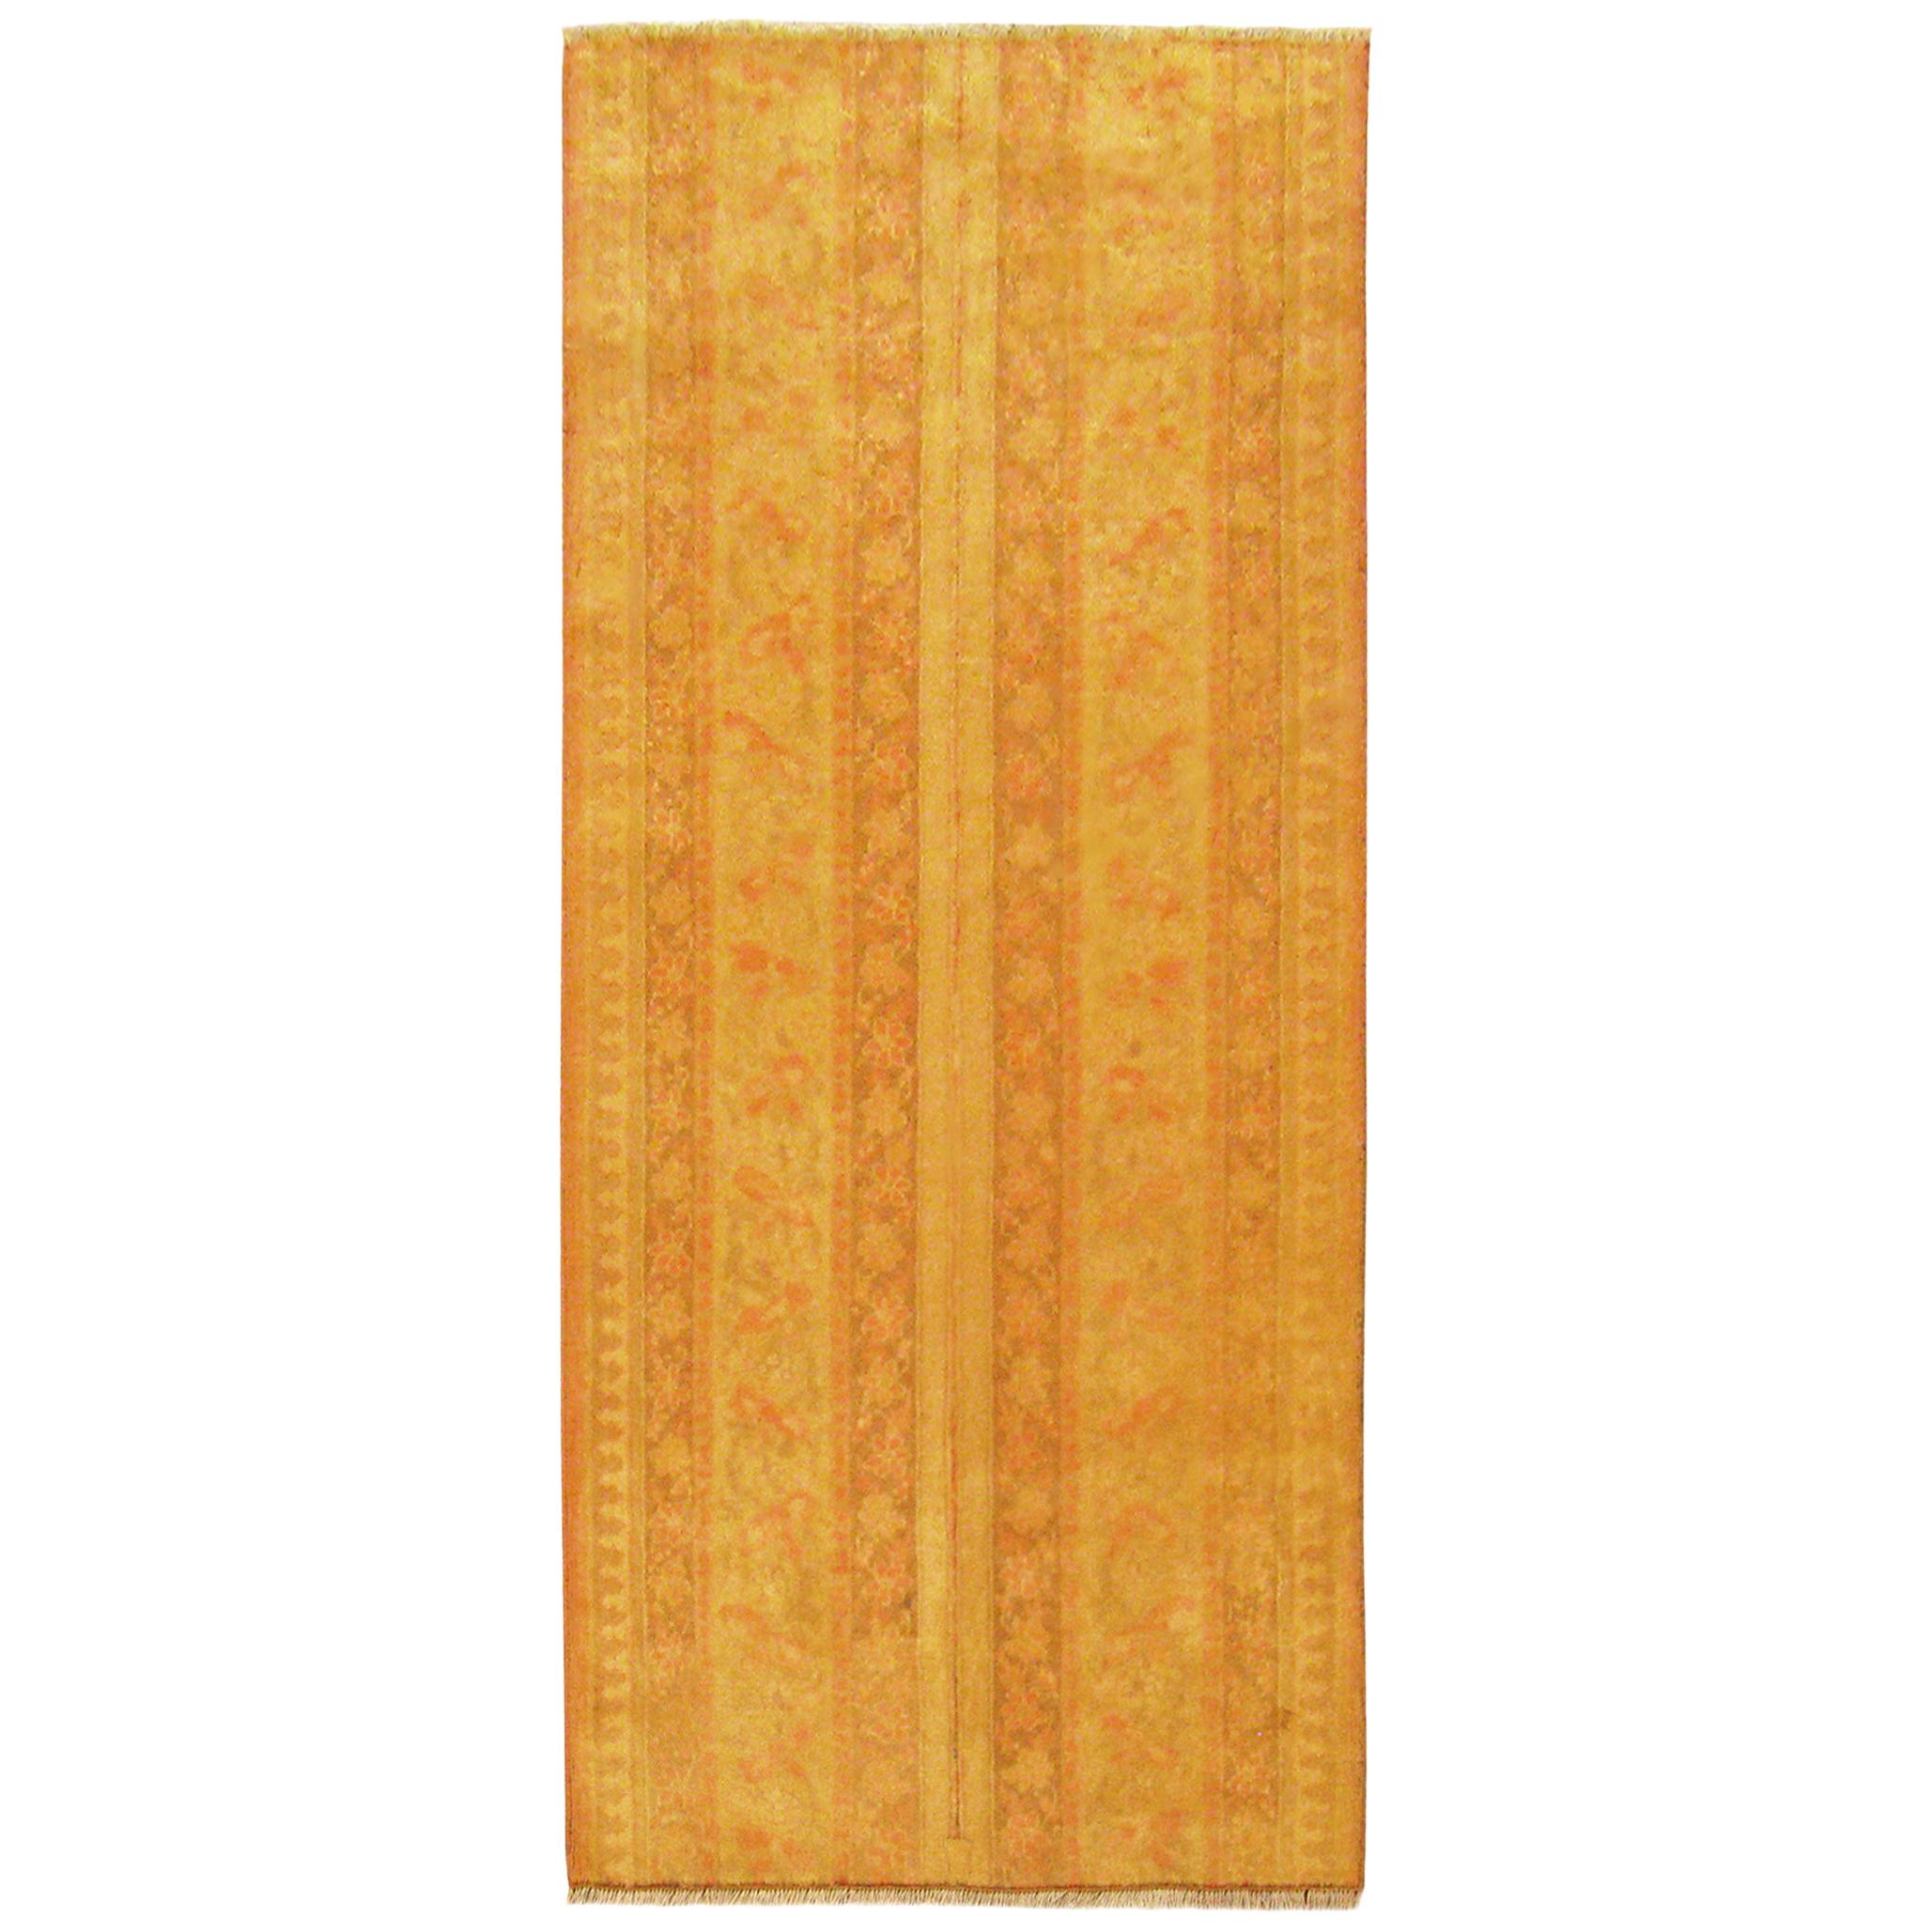 Antiker indischer Agra- orientalischer Teppich, in kleiner Läufergröße, mit Symmetrical-Streifen